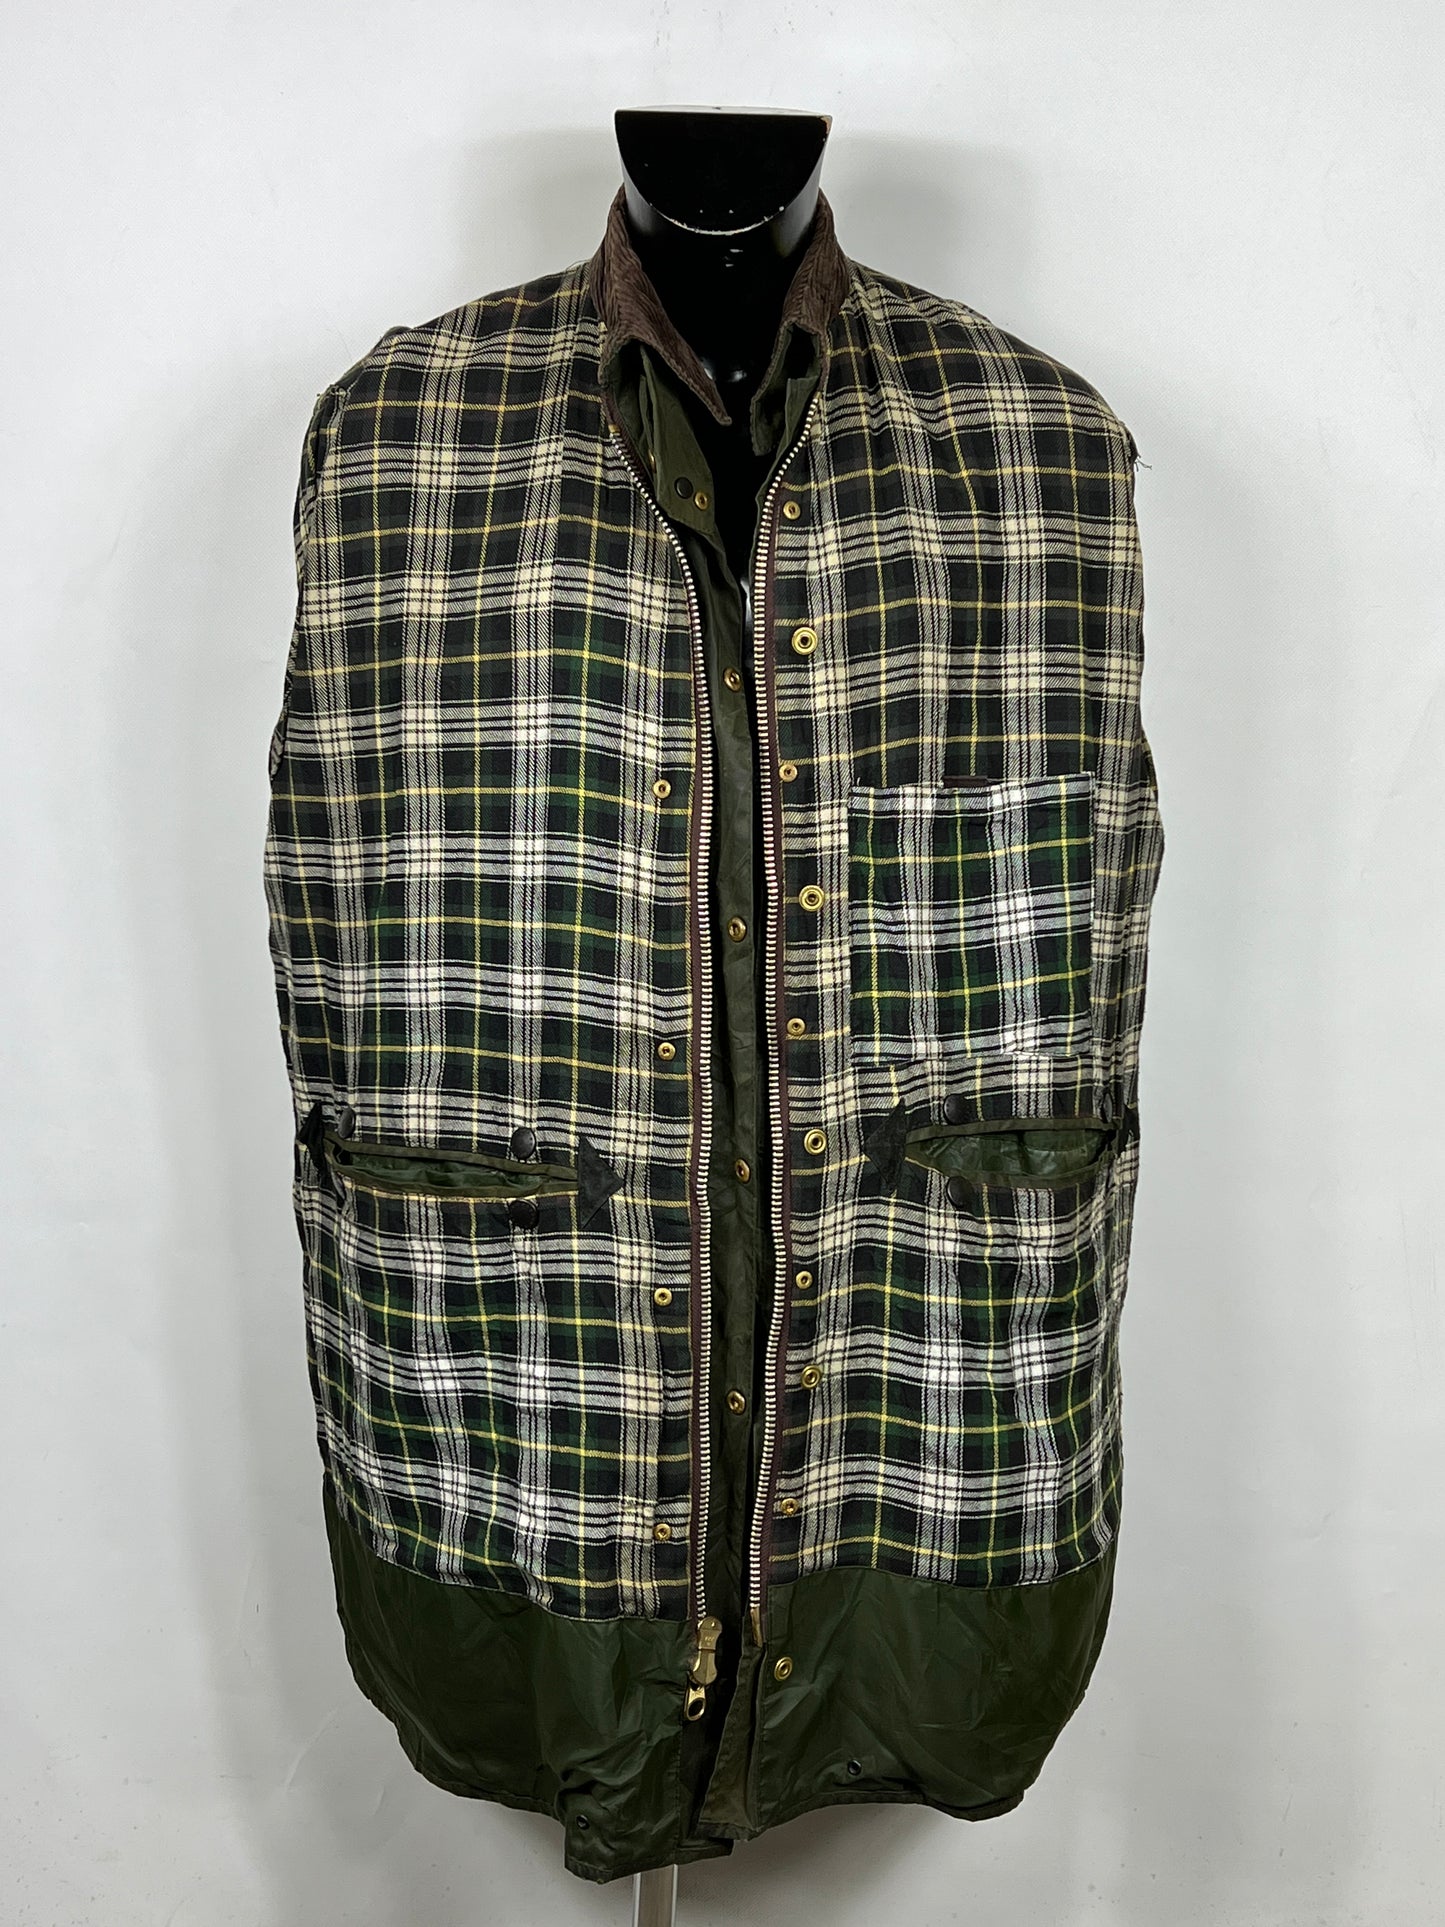 Giacca Barbour Border verde Vintage Cerata C42/107 cm - Green wax jacket Large